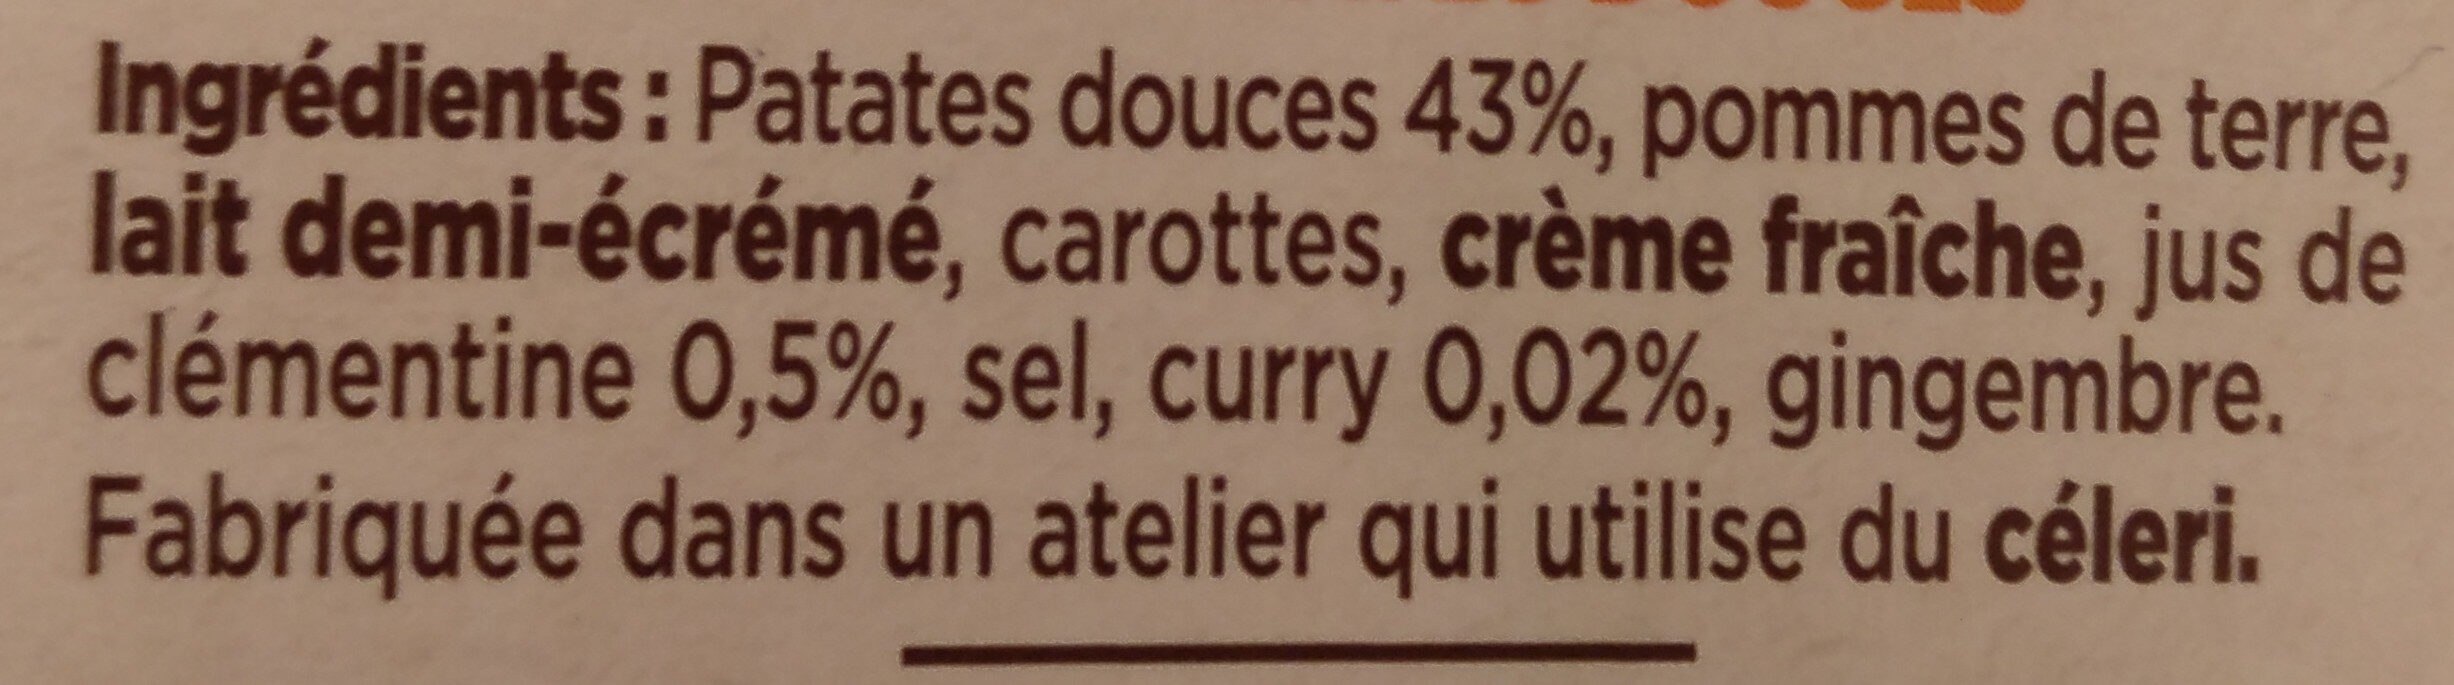 Purée de patates douces - Ingrediënten - fr